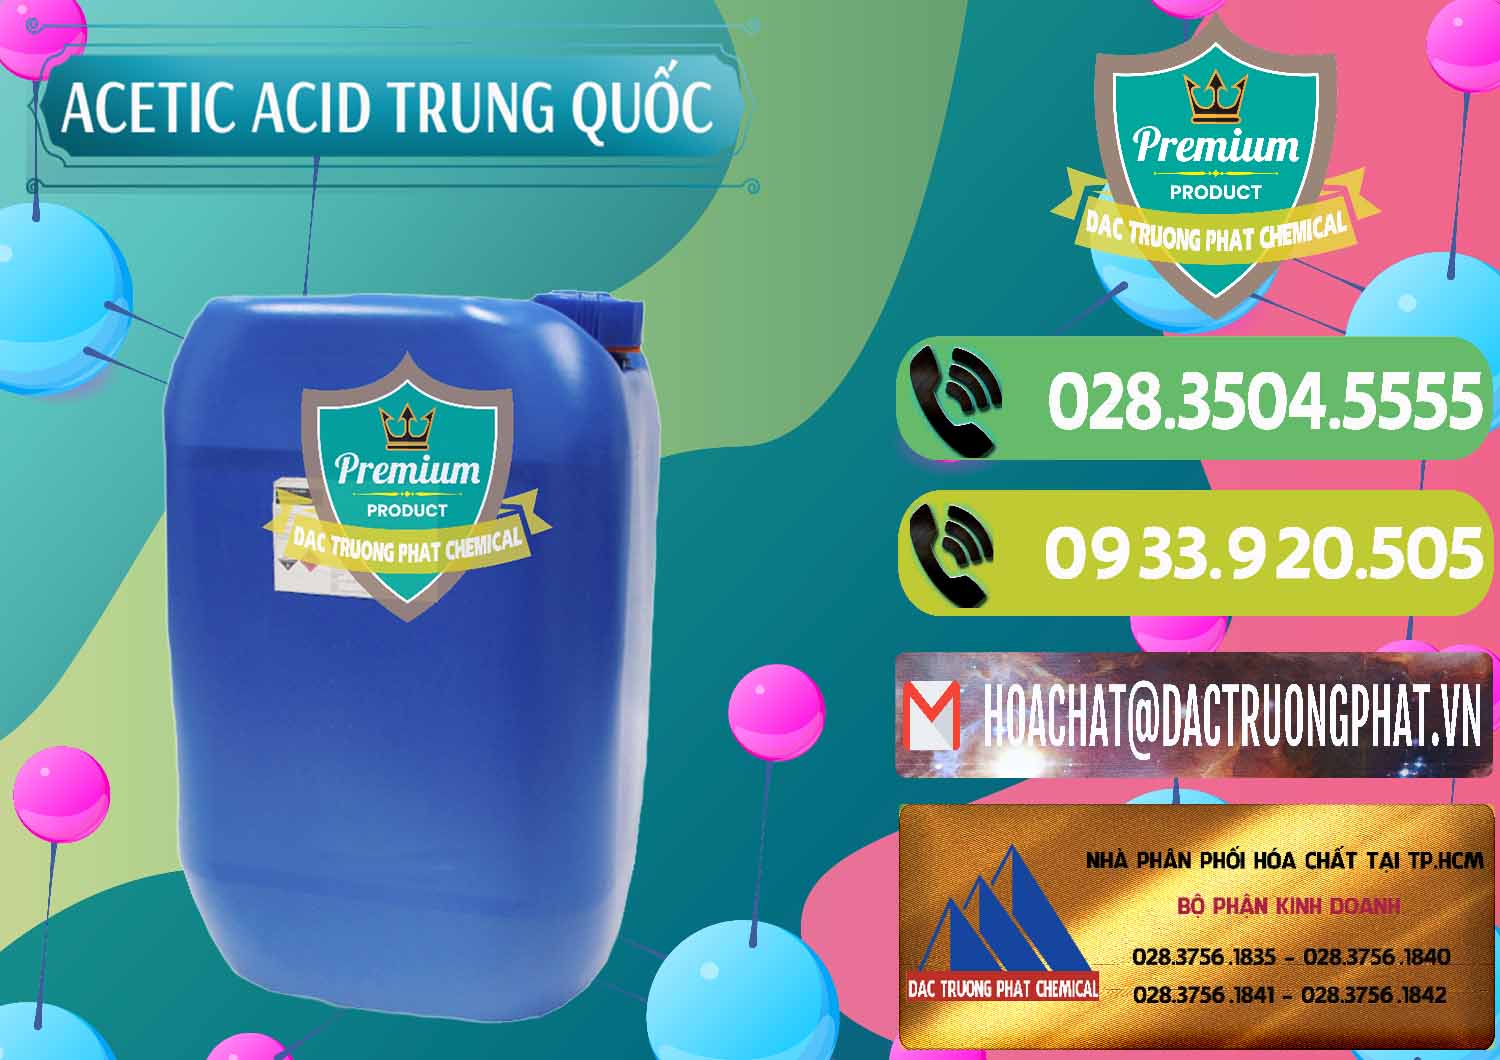 Cty bán và cung cấp Acetic Acid – Axit Acetic Trung Quốc China - 0358 - Công ty chuyên cung cấp - bán hóa chất tại TP.HCM - hoachatmientay.vn